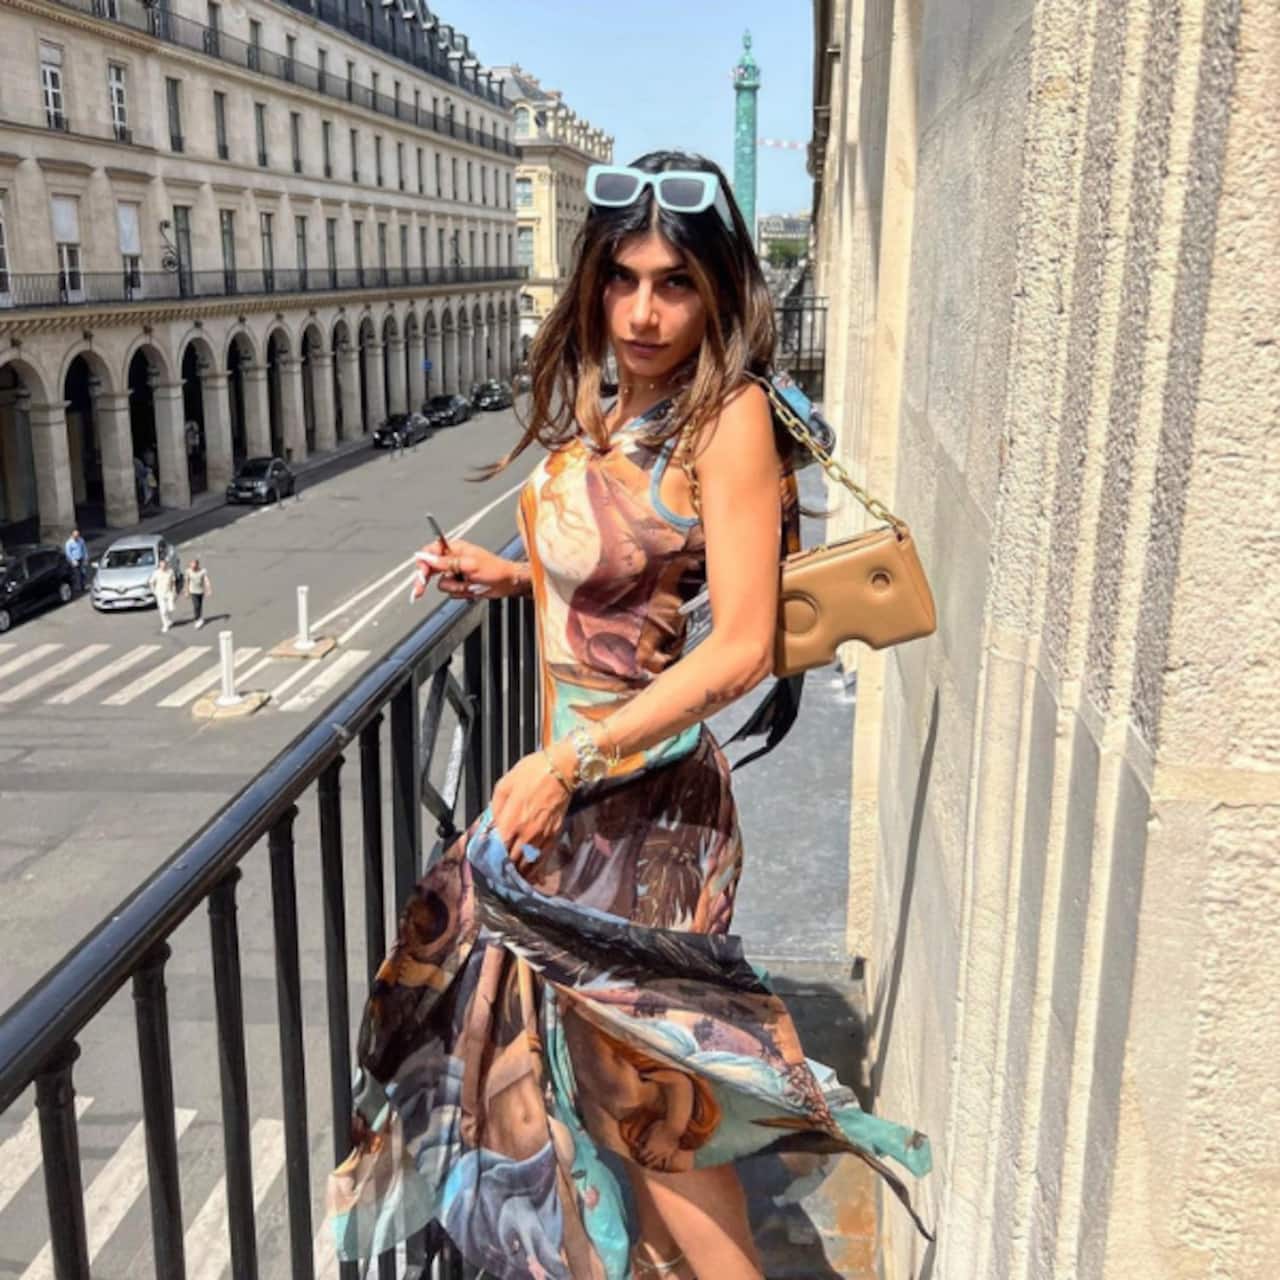 हवा से उड़ी मिया खलीफा (Mia Khalifa) की ड्रेस